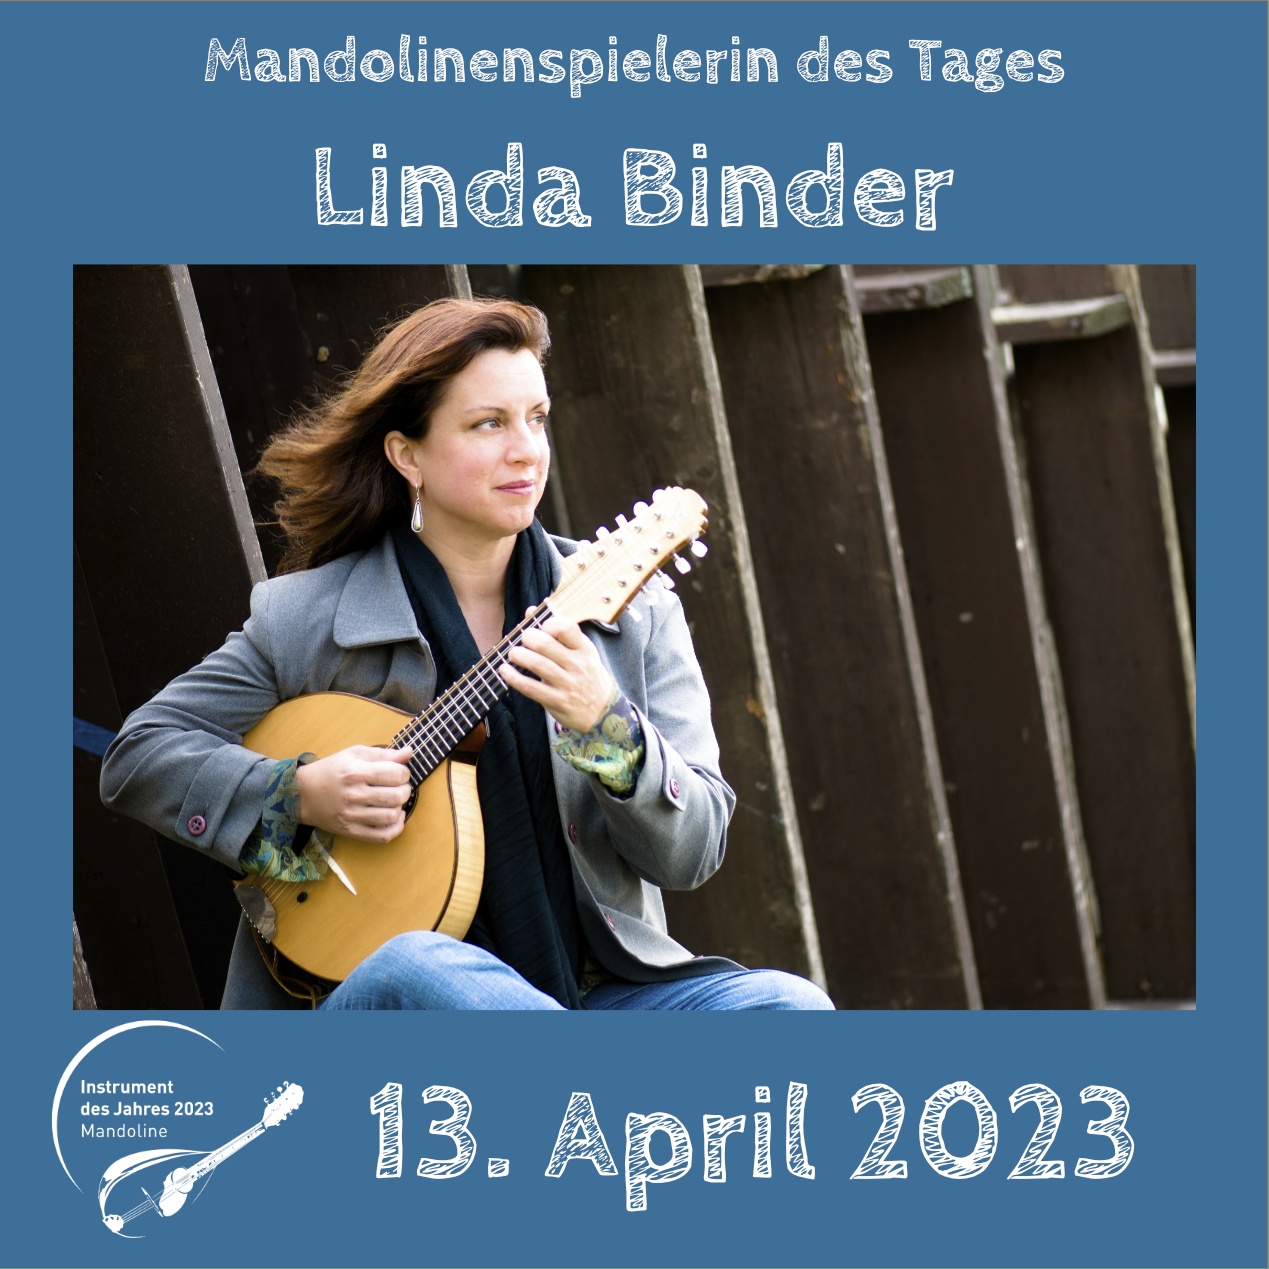 Linda Binder Instrument des Jahres 2023 Mandolinenspieler Mandolinenspielerin des Tages